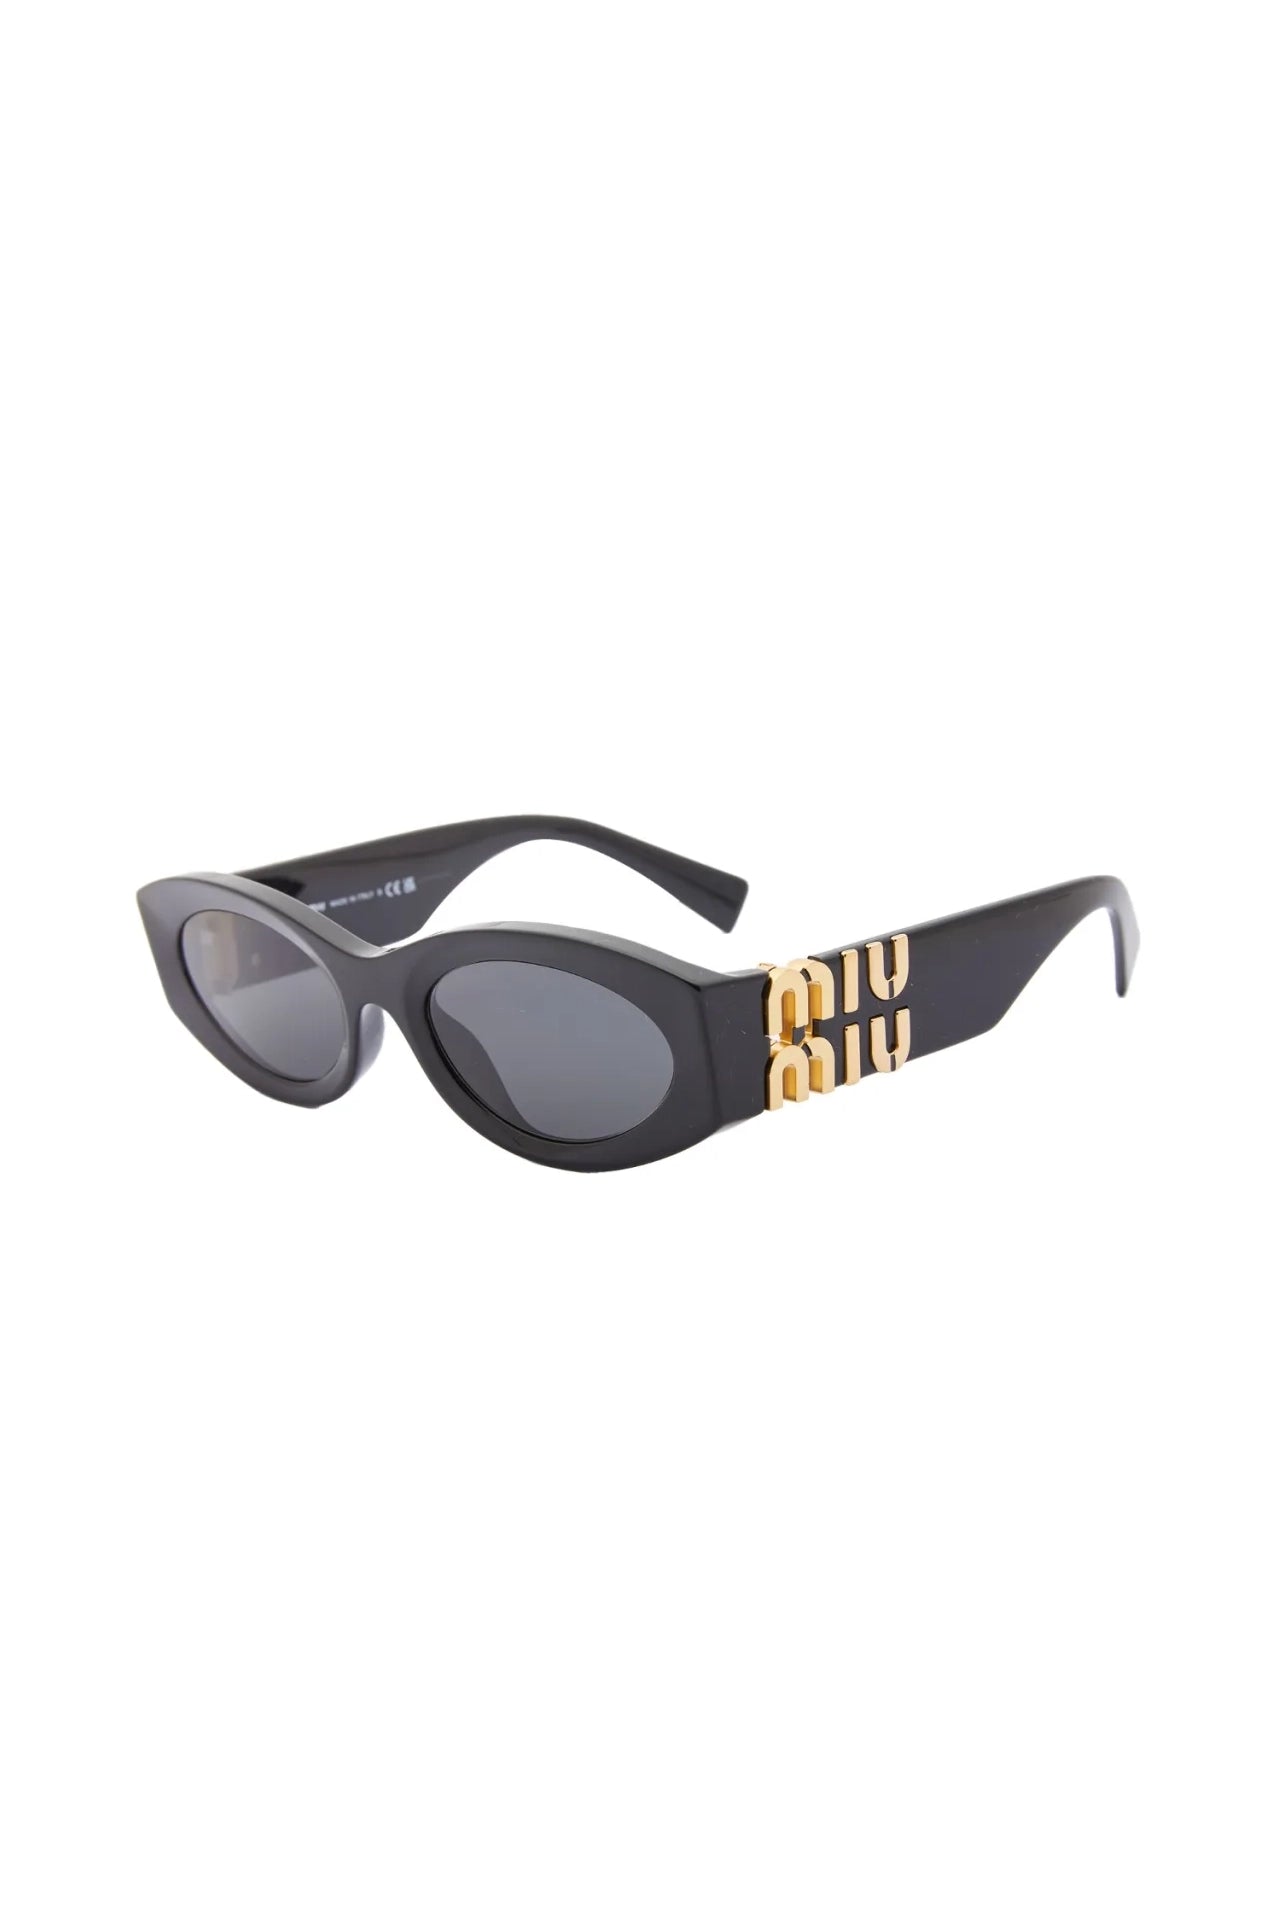 Miu Miu Oval Sunglasses Black 0MU 11WS